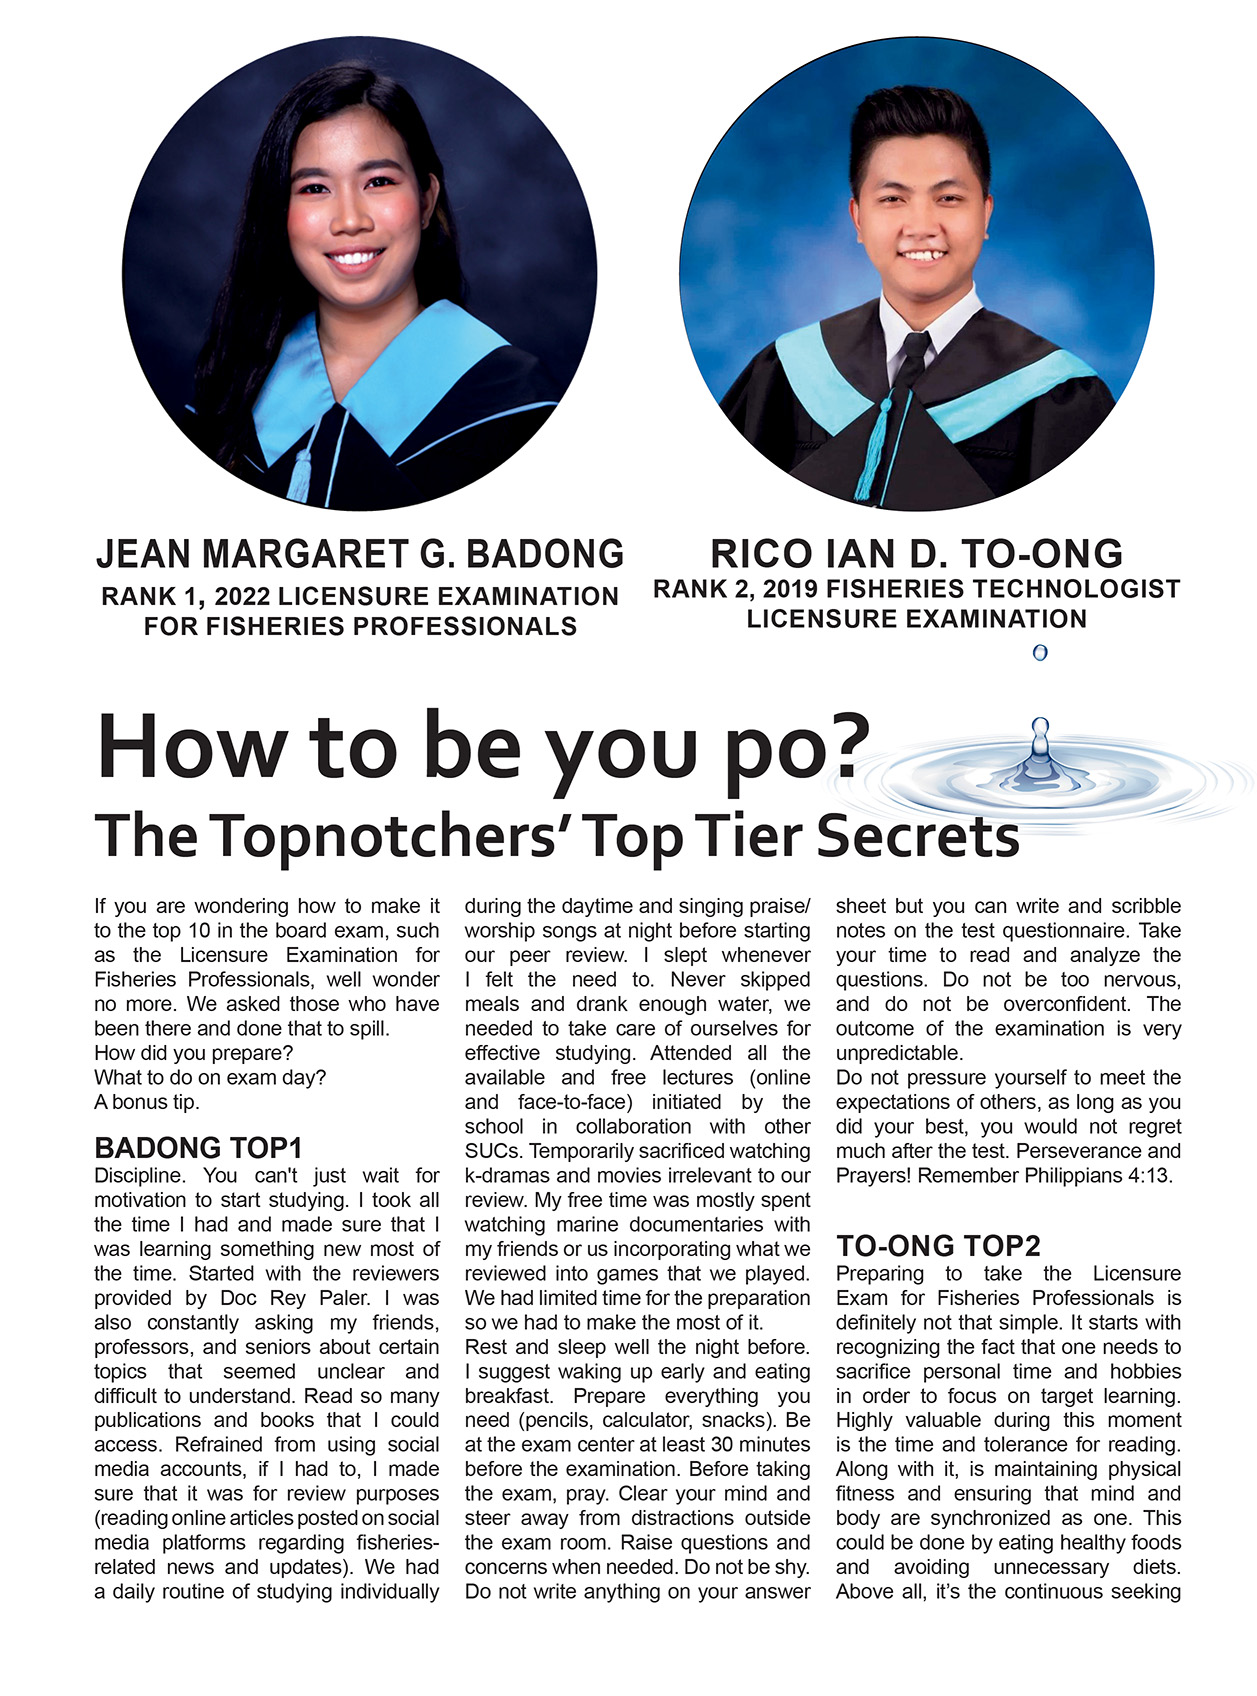 The Topnotchers’ Top Tier Secret